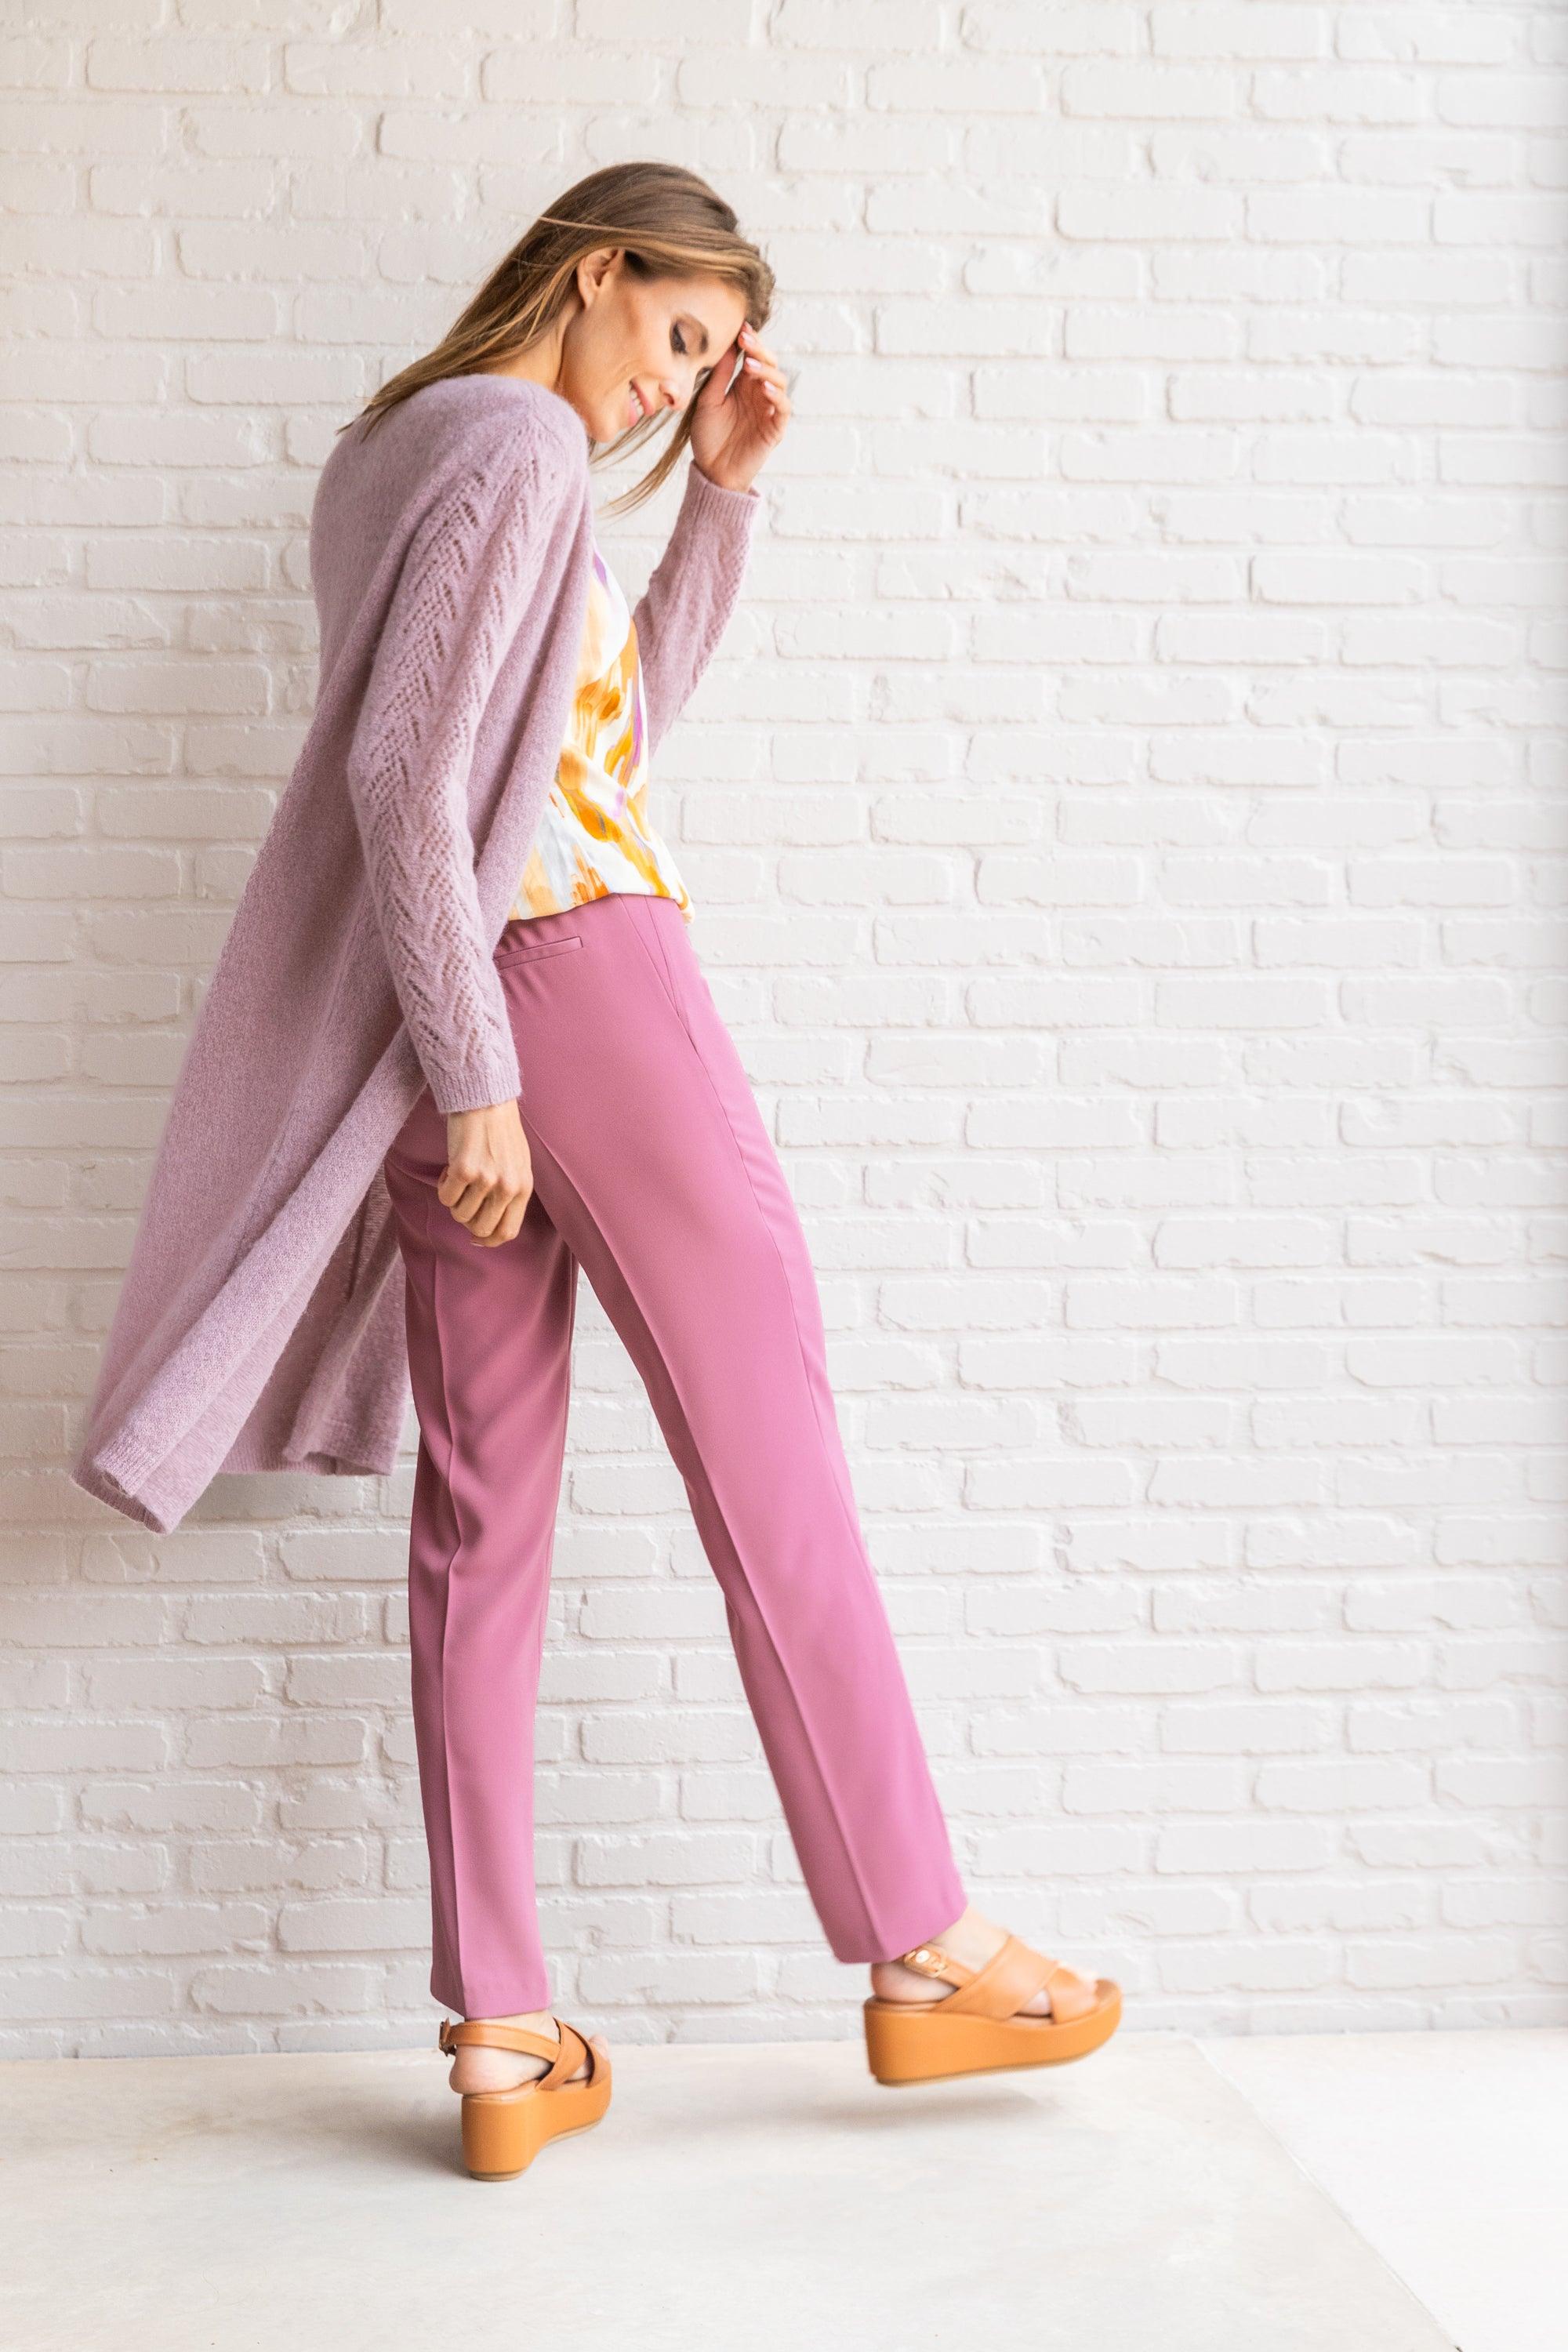 Giletpull Roze Accent Fashion ( Cosmopoliatan/Lavend ) - Delaere Womenswear